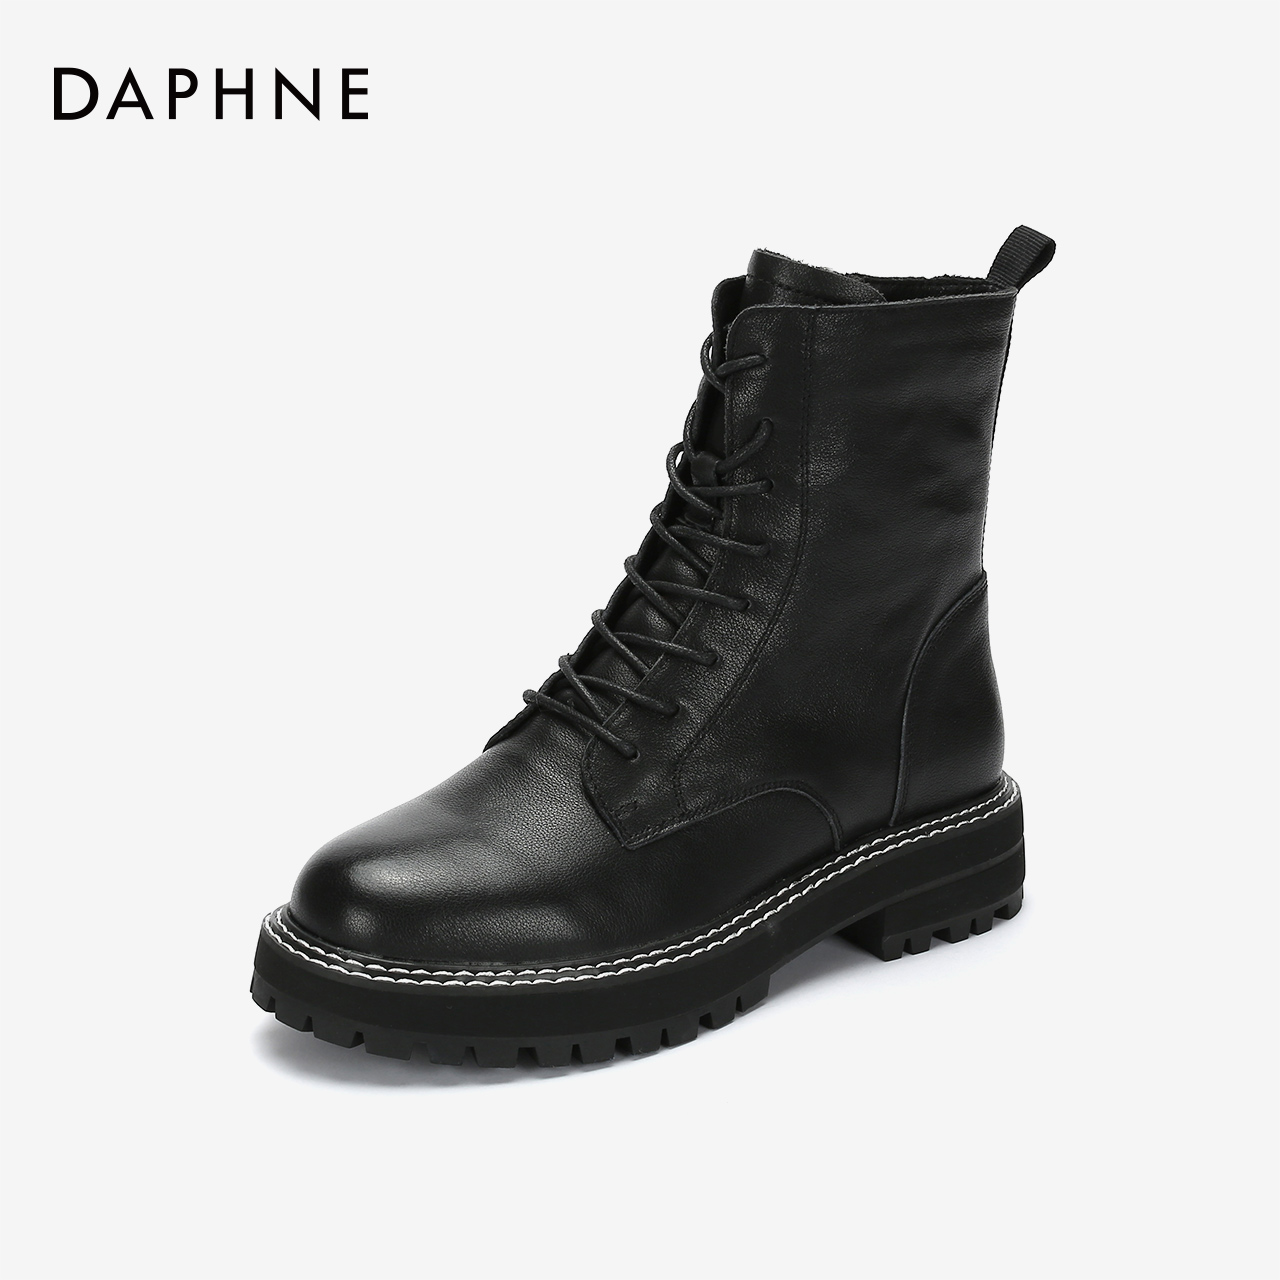 Daphne/达芙妮2019冬拉链系带马丁靴低跟加绒纯色潮流帅气短靴